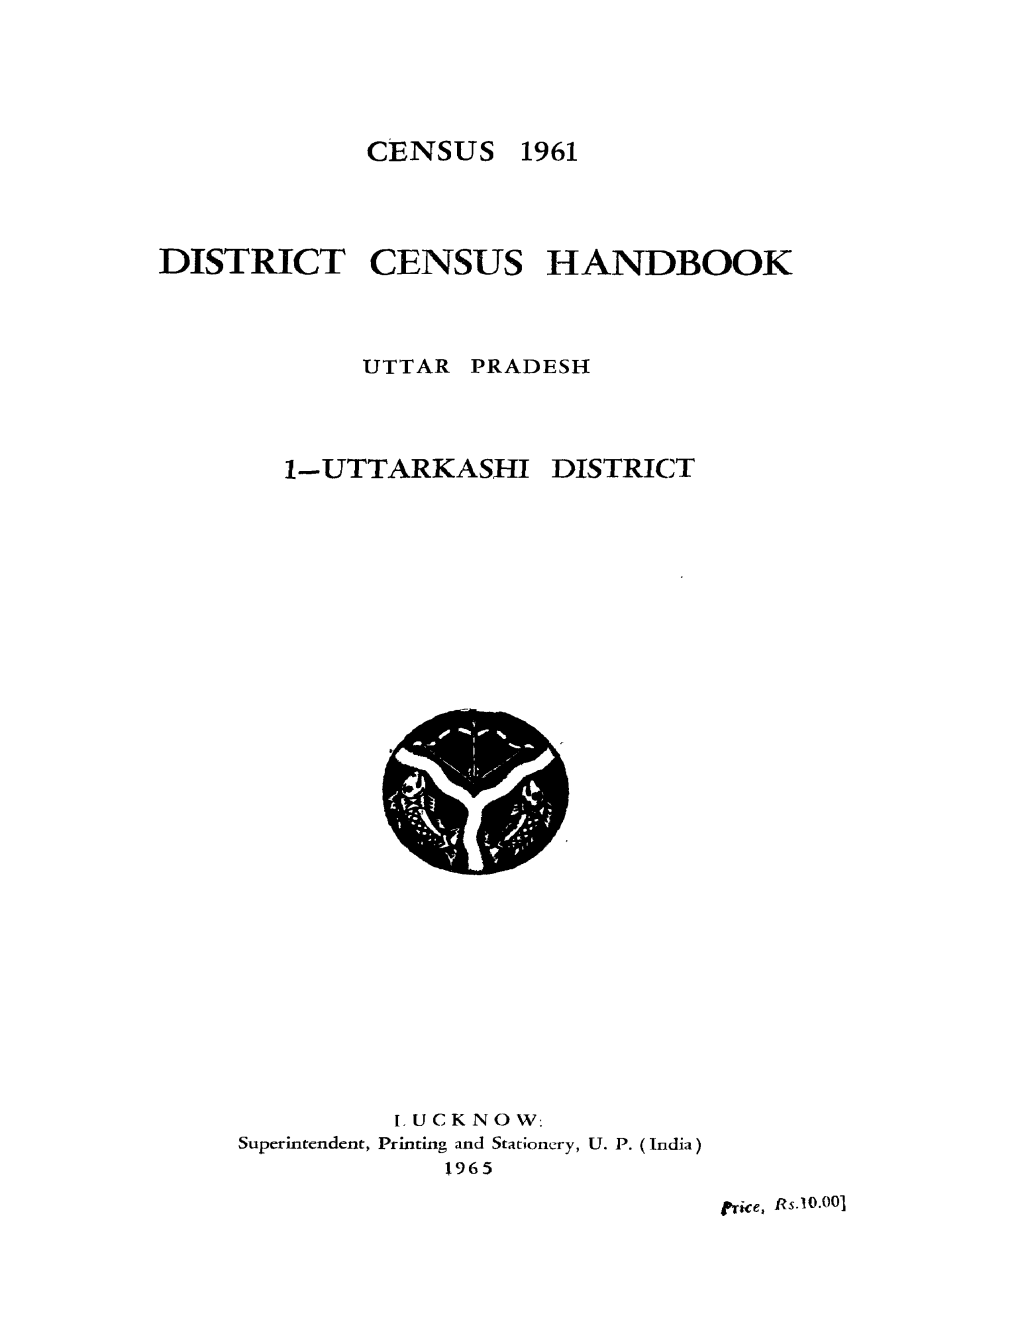 District Census Handbook, 1-Uttarkashi, Uttar Pradesh